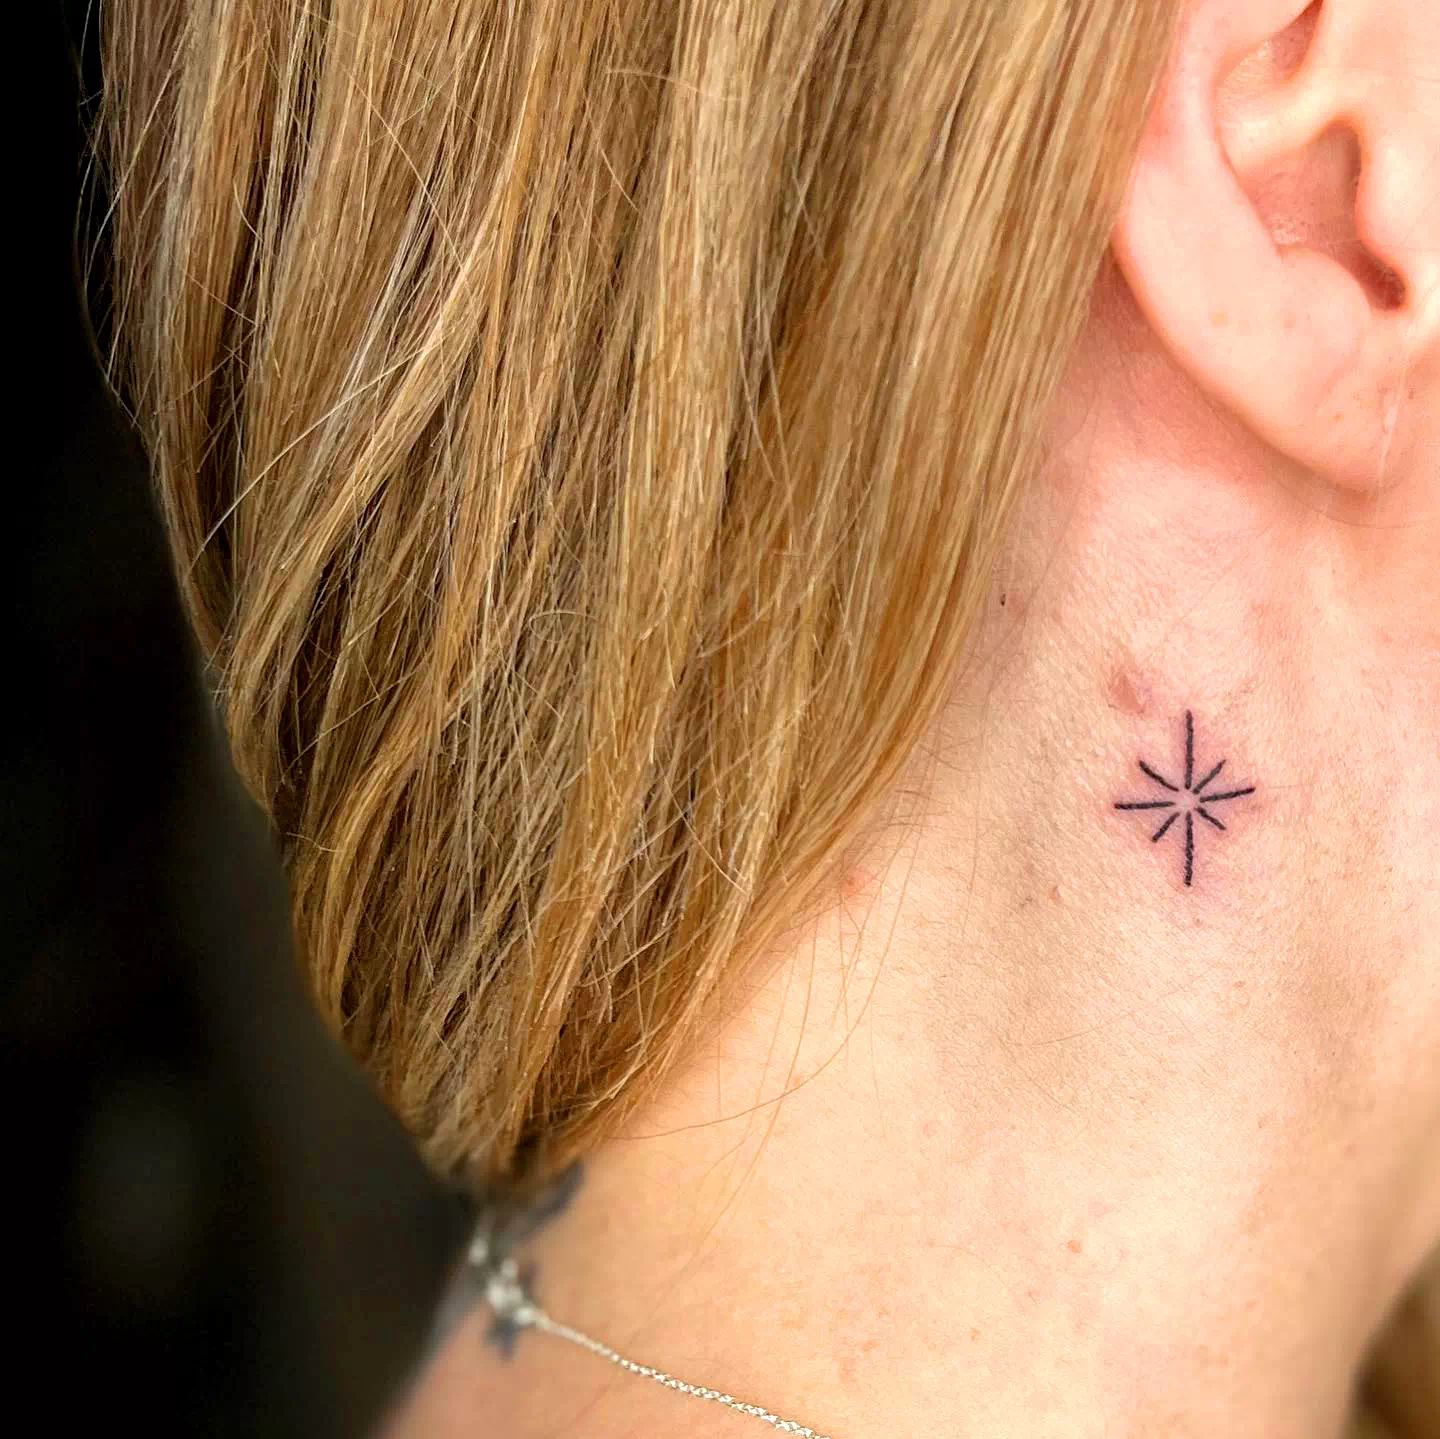 Star neck tattoo 1